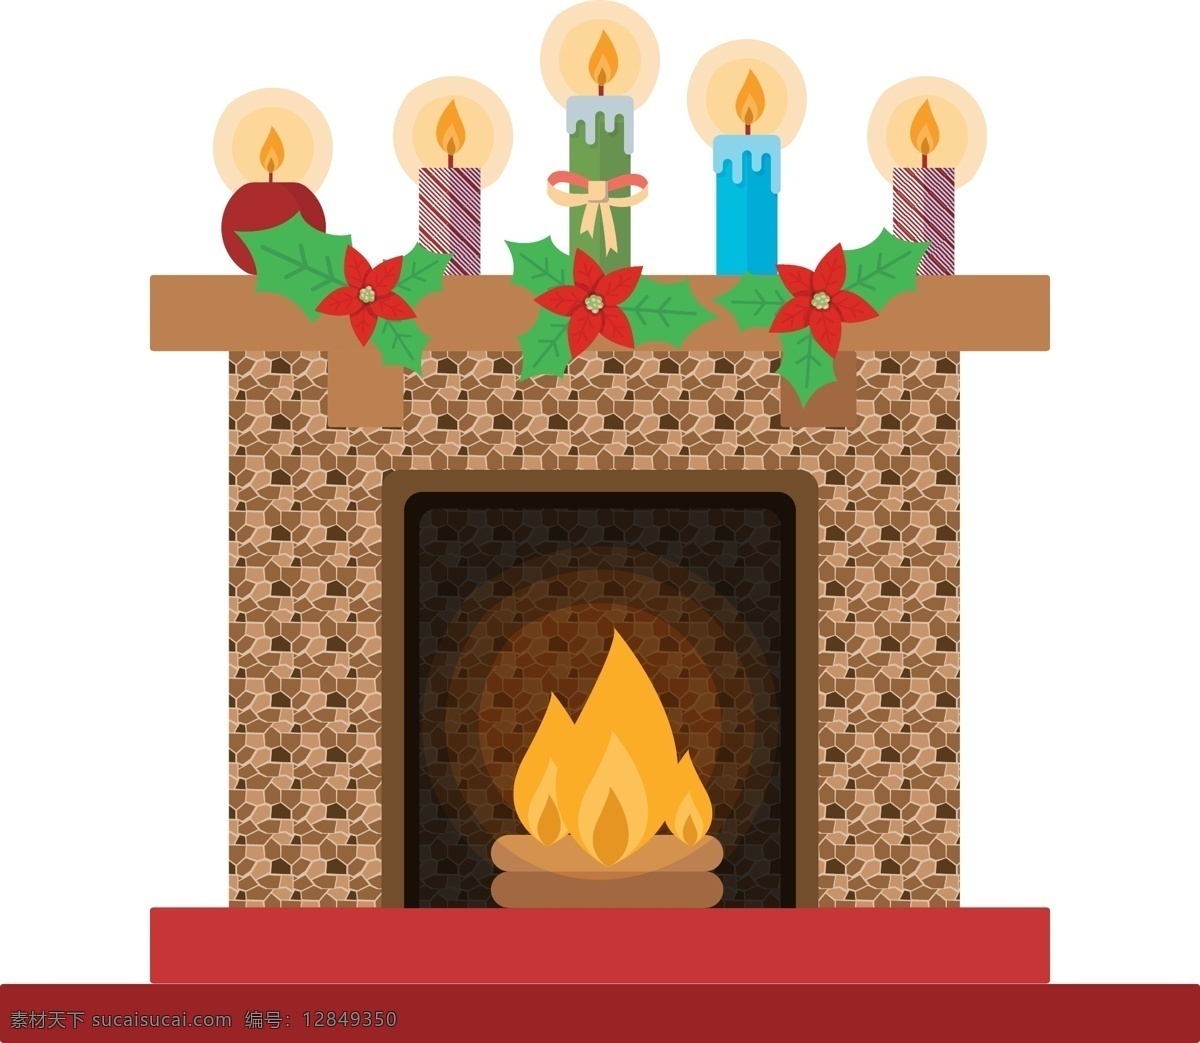 炉火 跳跃 壁炉 原创 元素 圣诞节 卡通 蜡烛 花朵 手绘